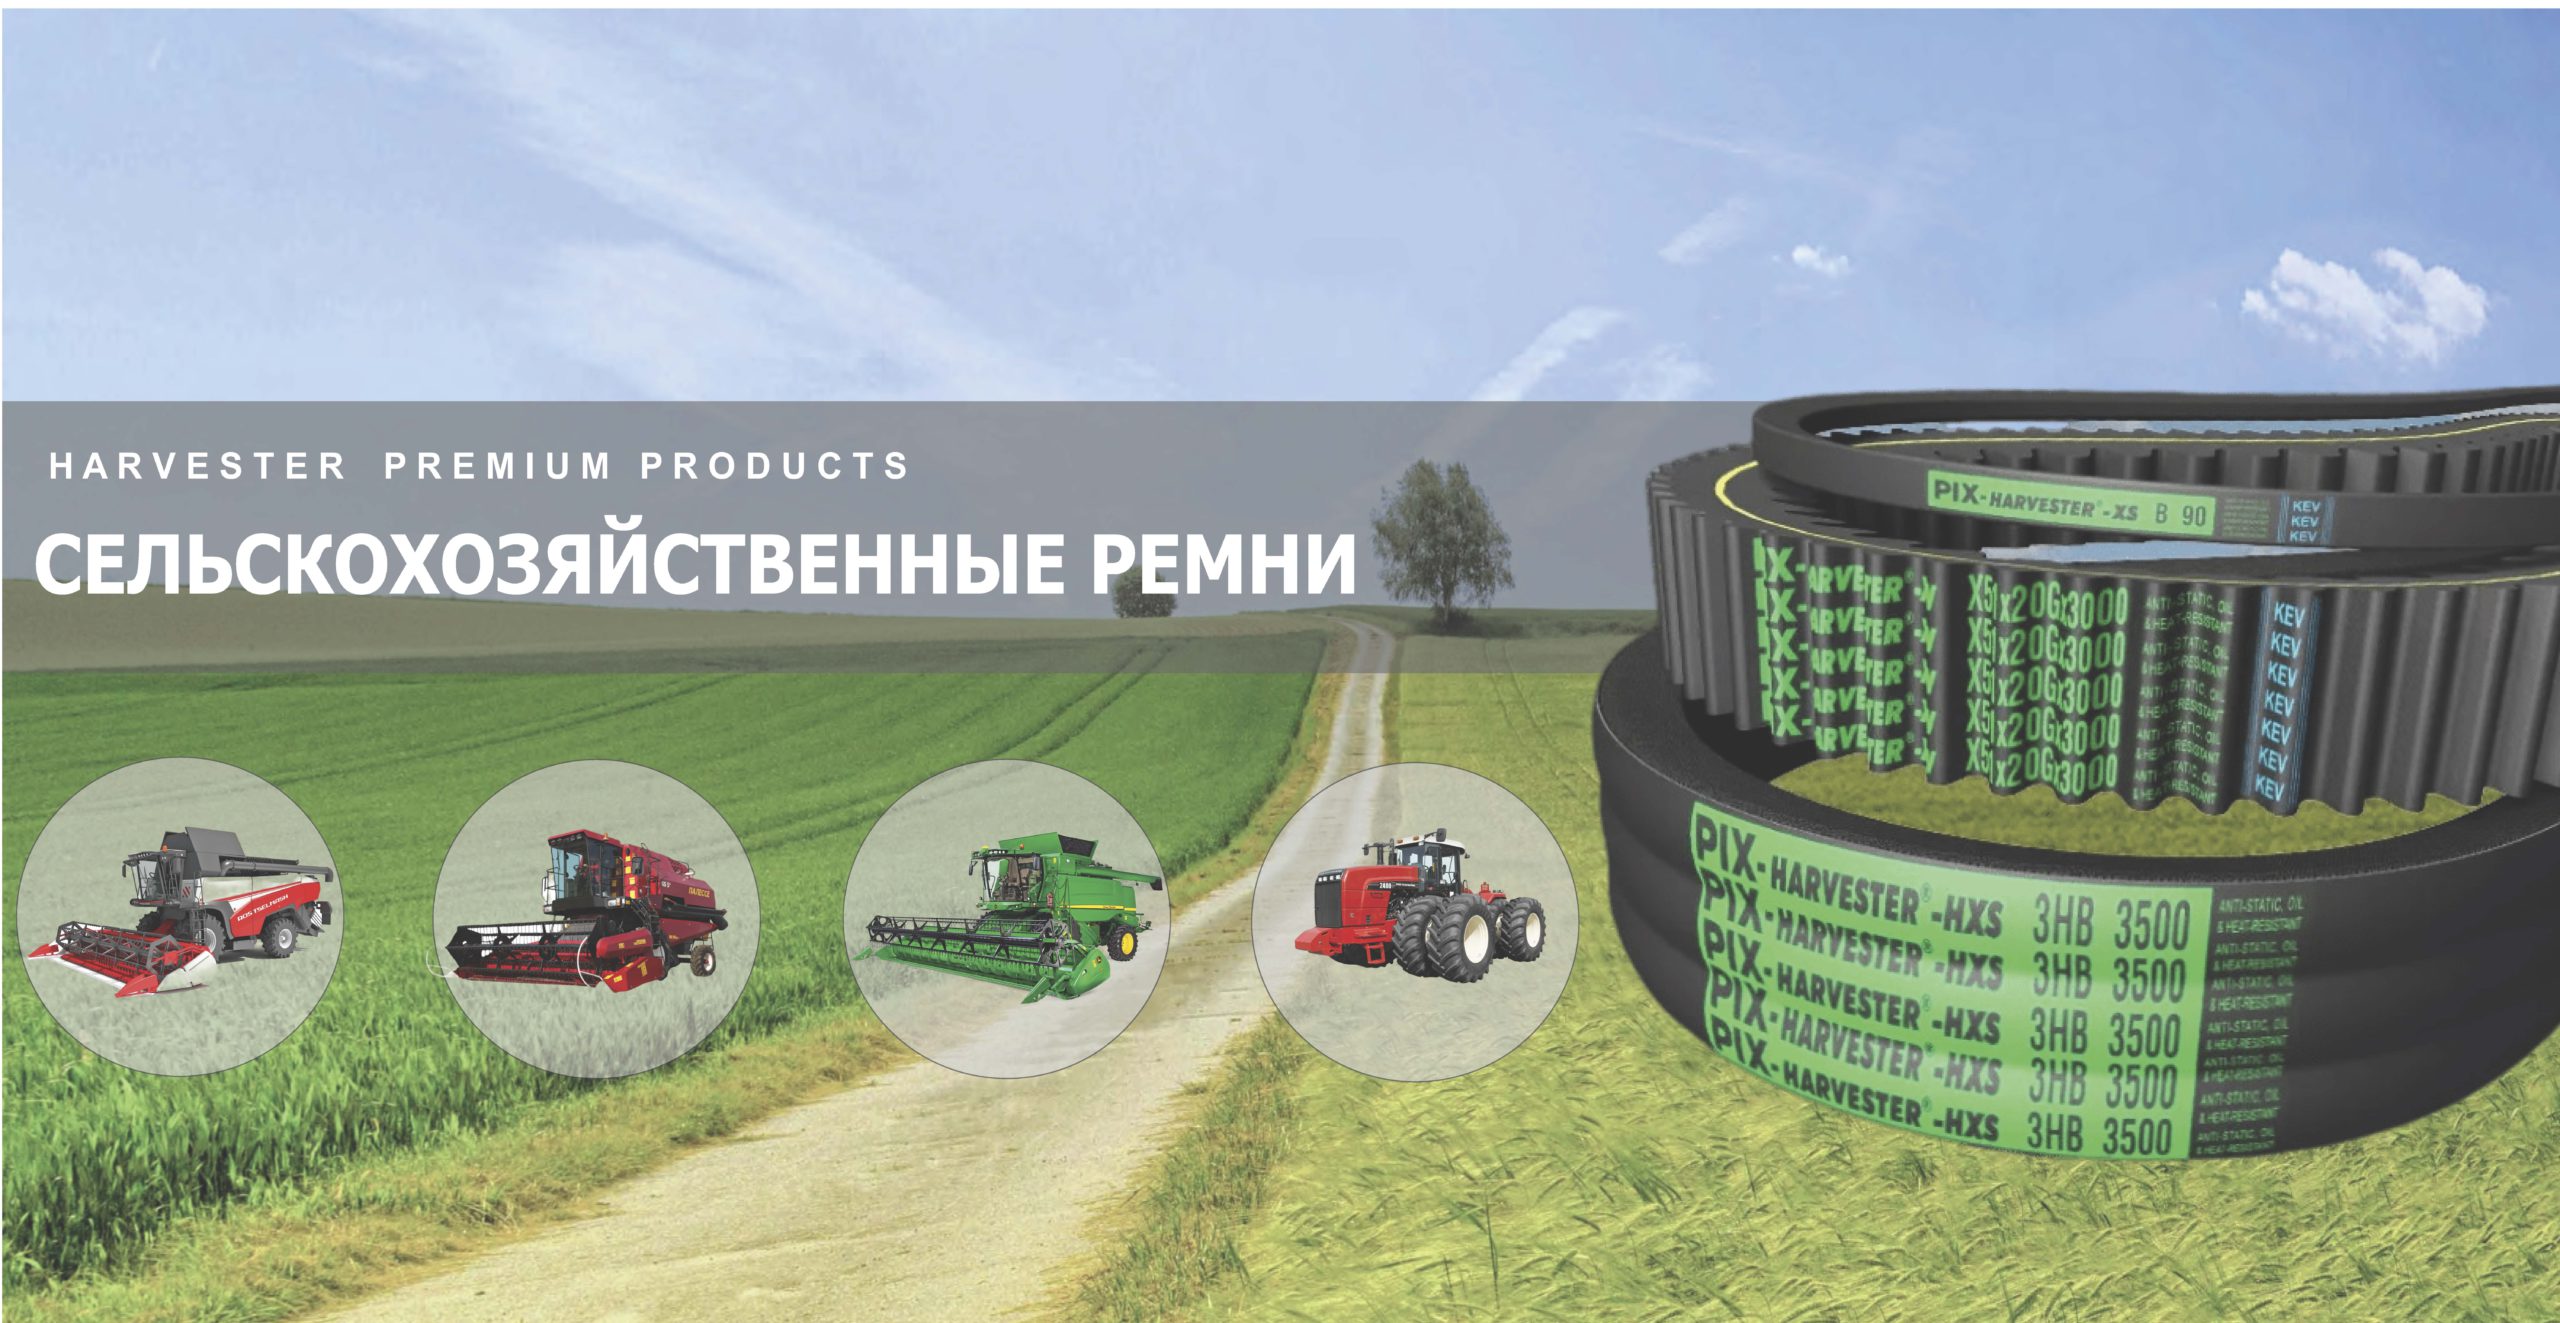 Официальный сайт PIX Harvester в России